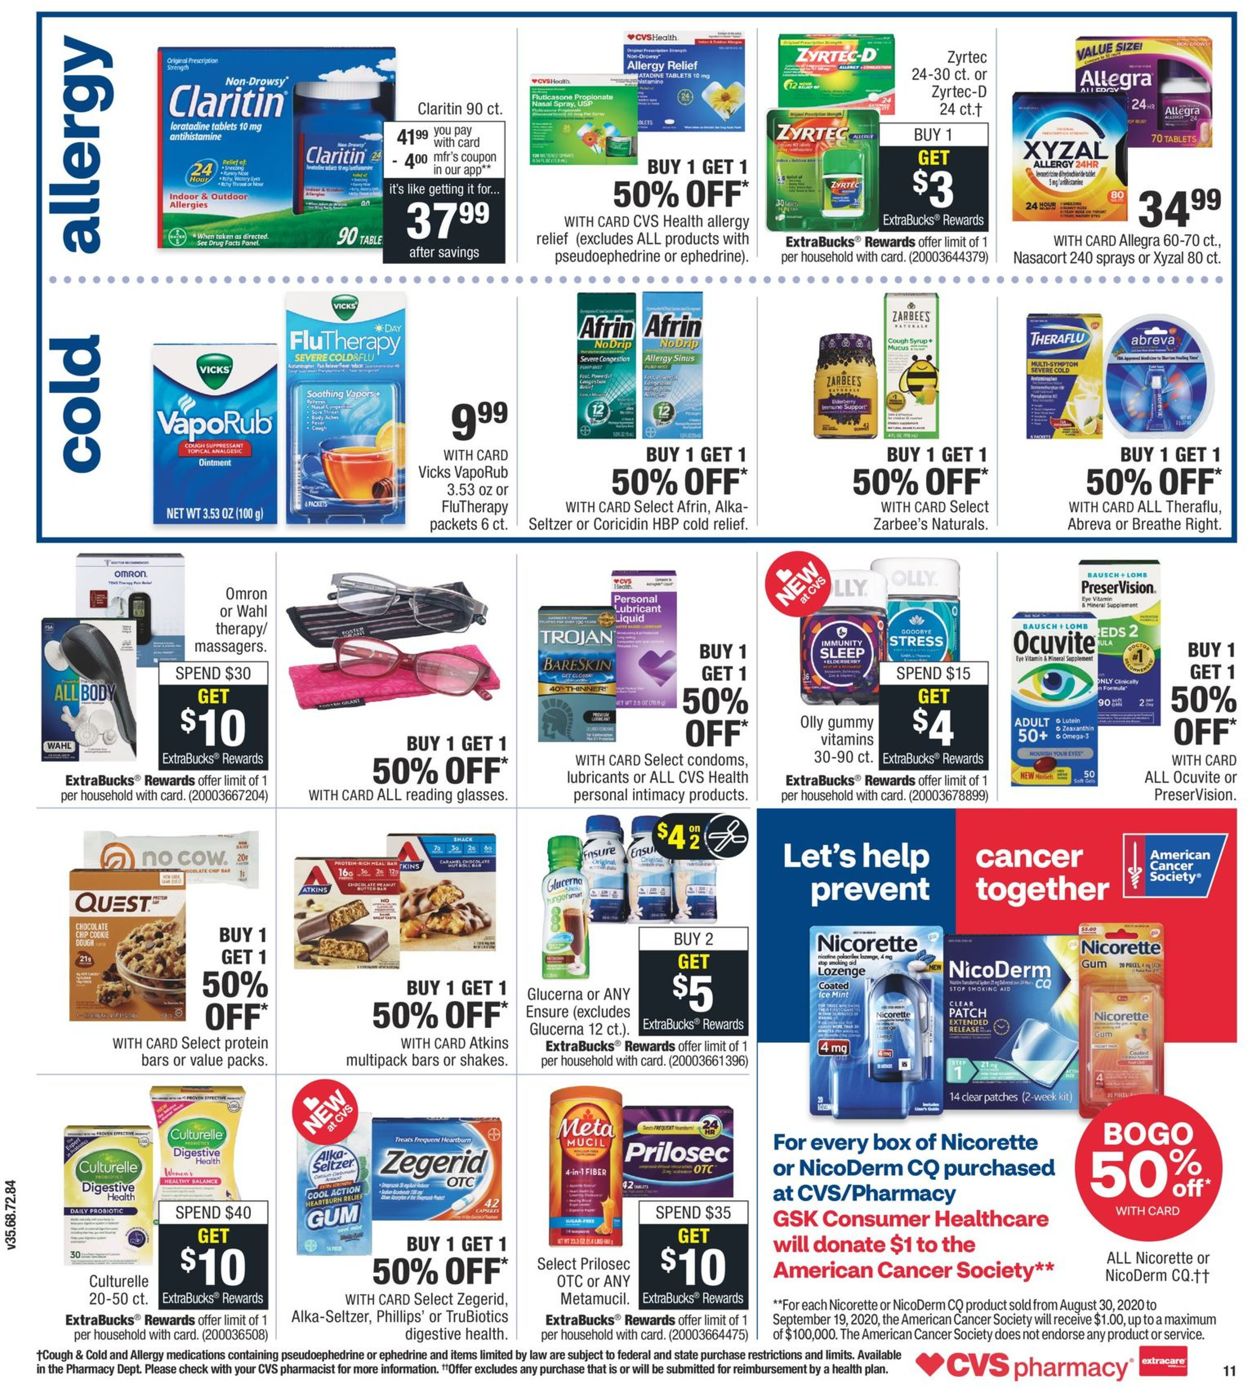 Catalogue CVS Pharmacy from 08/30/2020